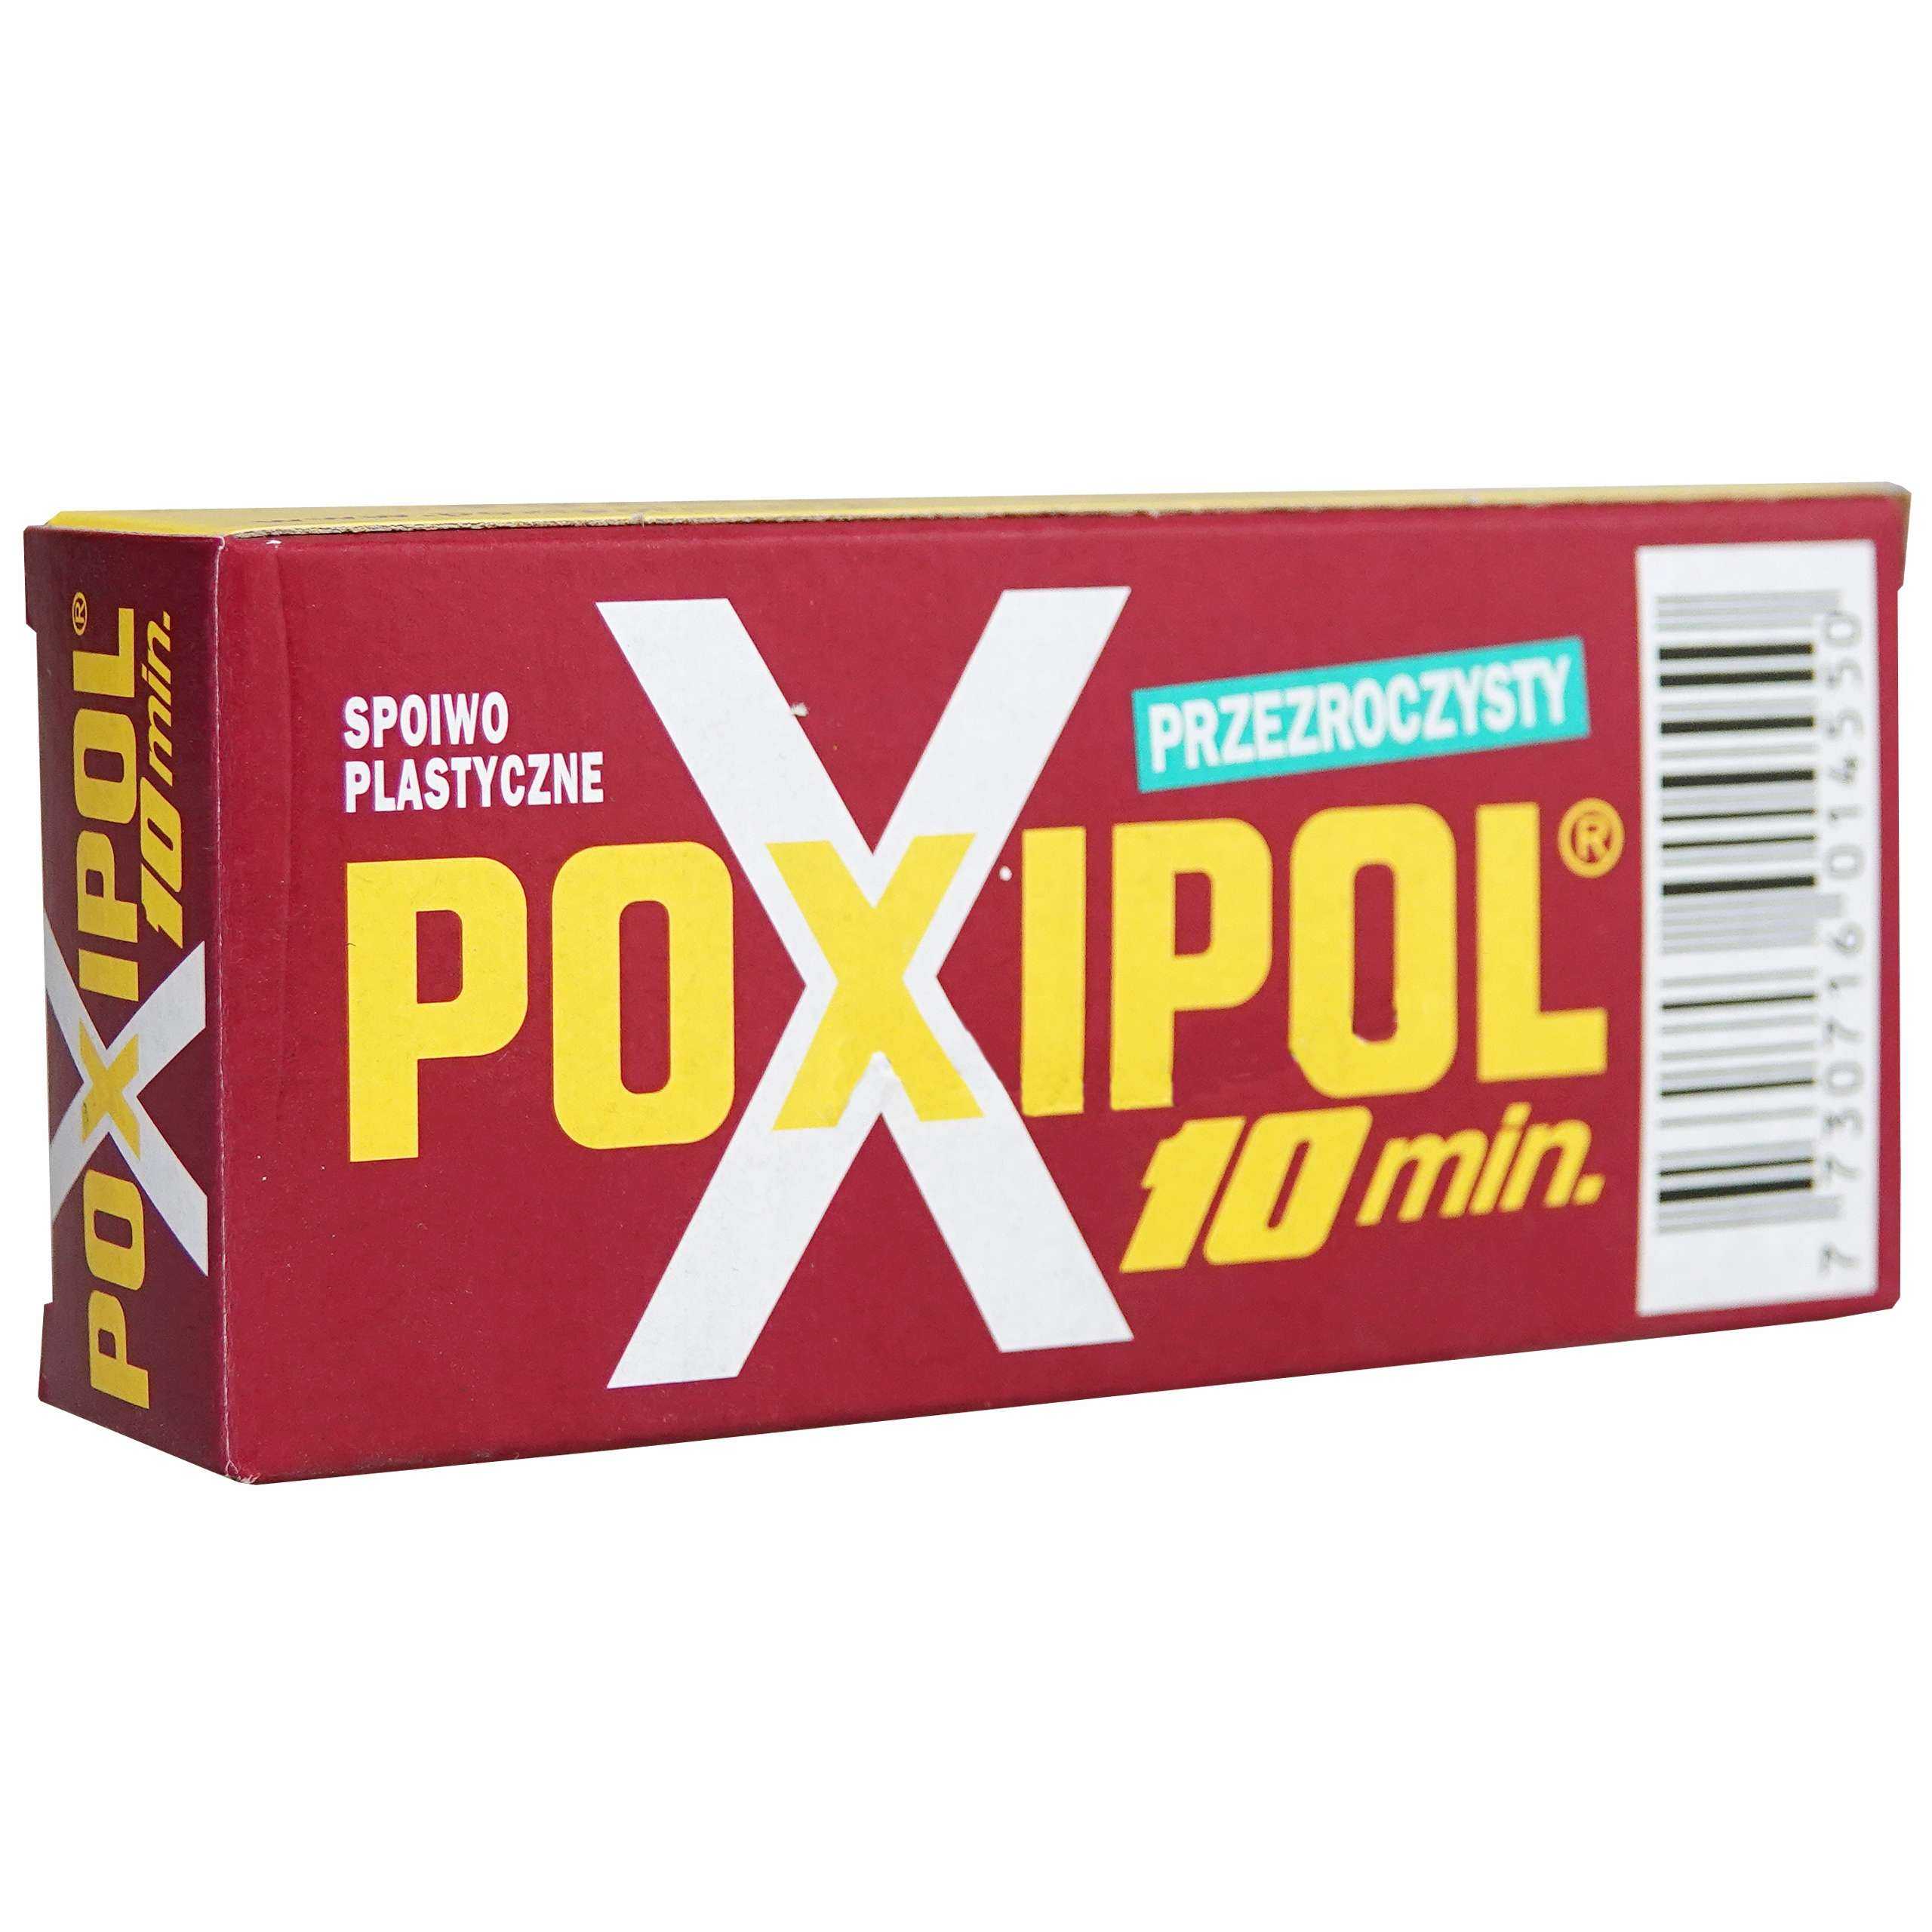 Холодная сварка poxipol (поксипол): характеристики и инструкция по применению